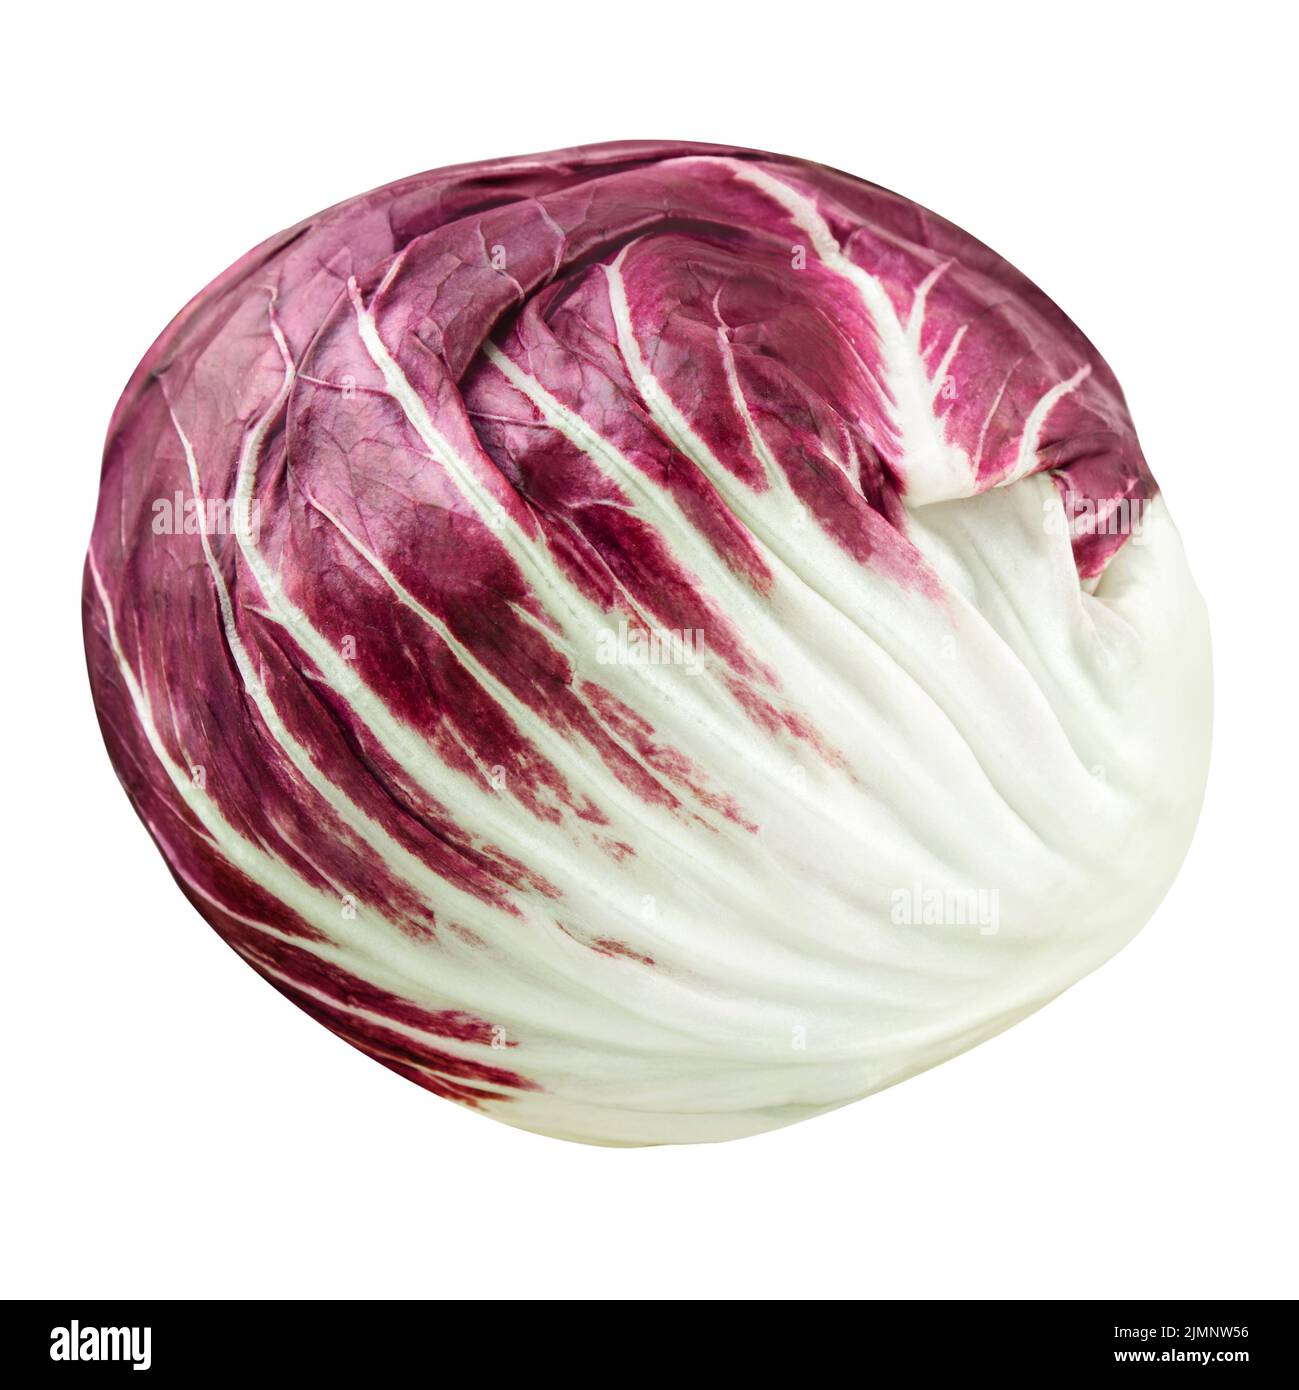 1 Radicchio salad isolated on white background close up Stock Photo